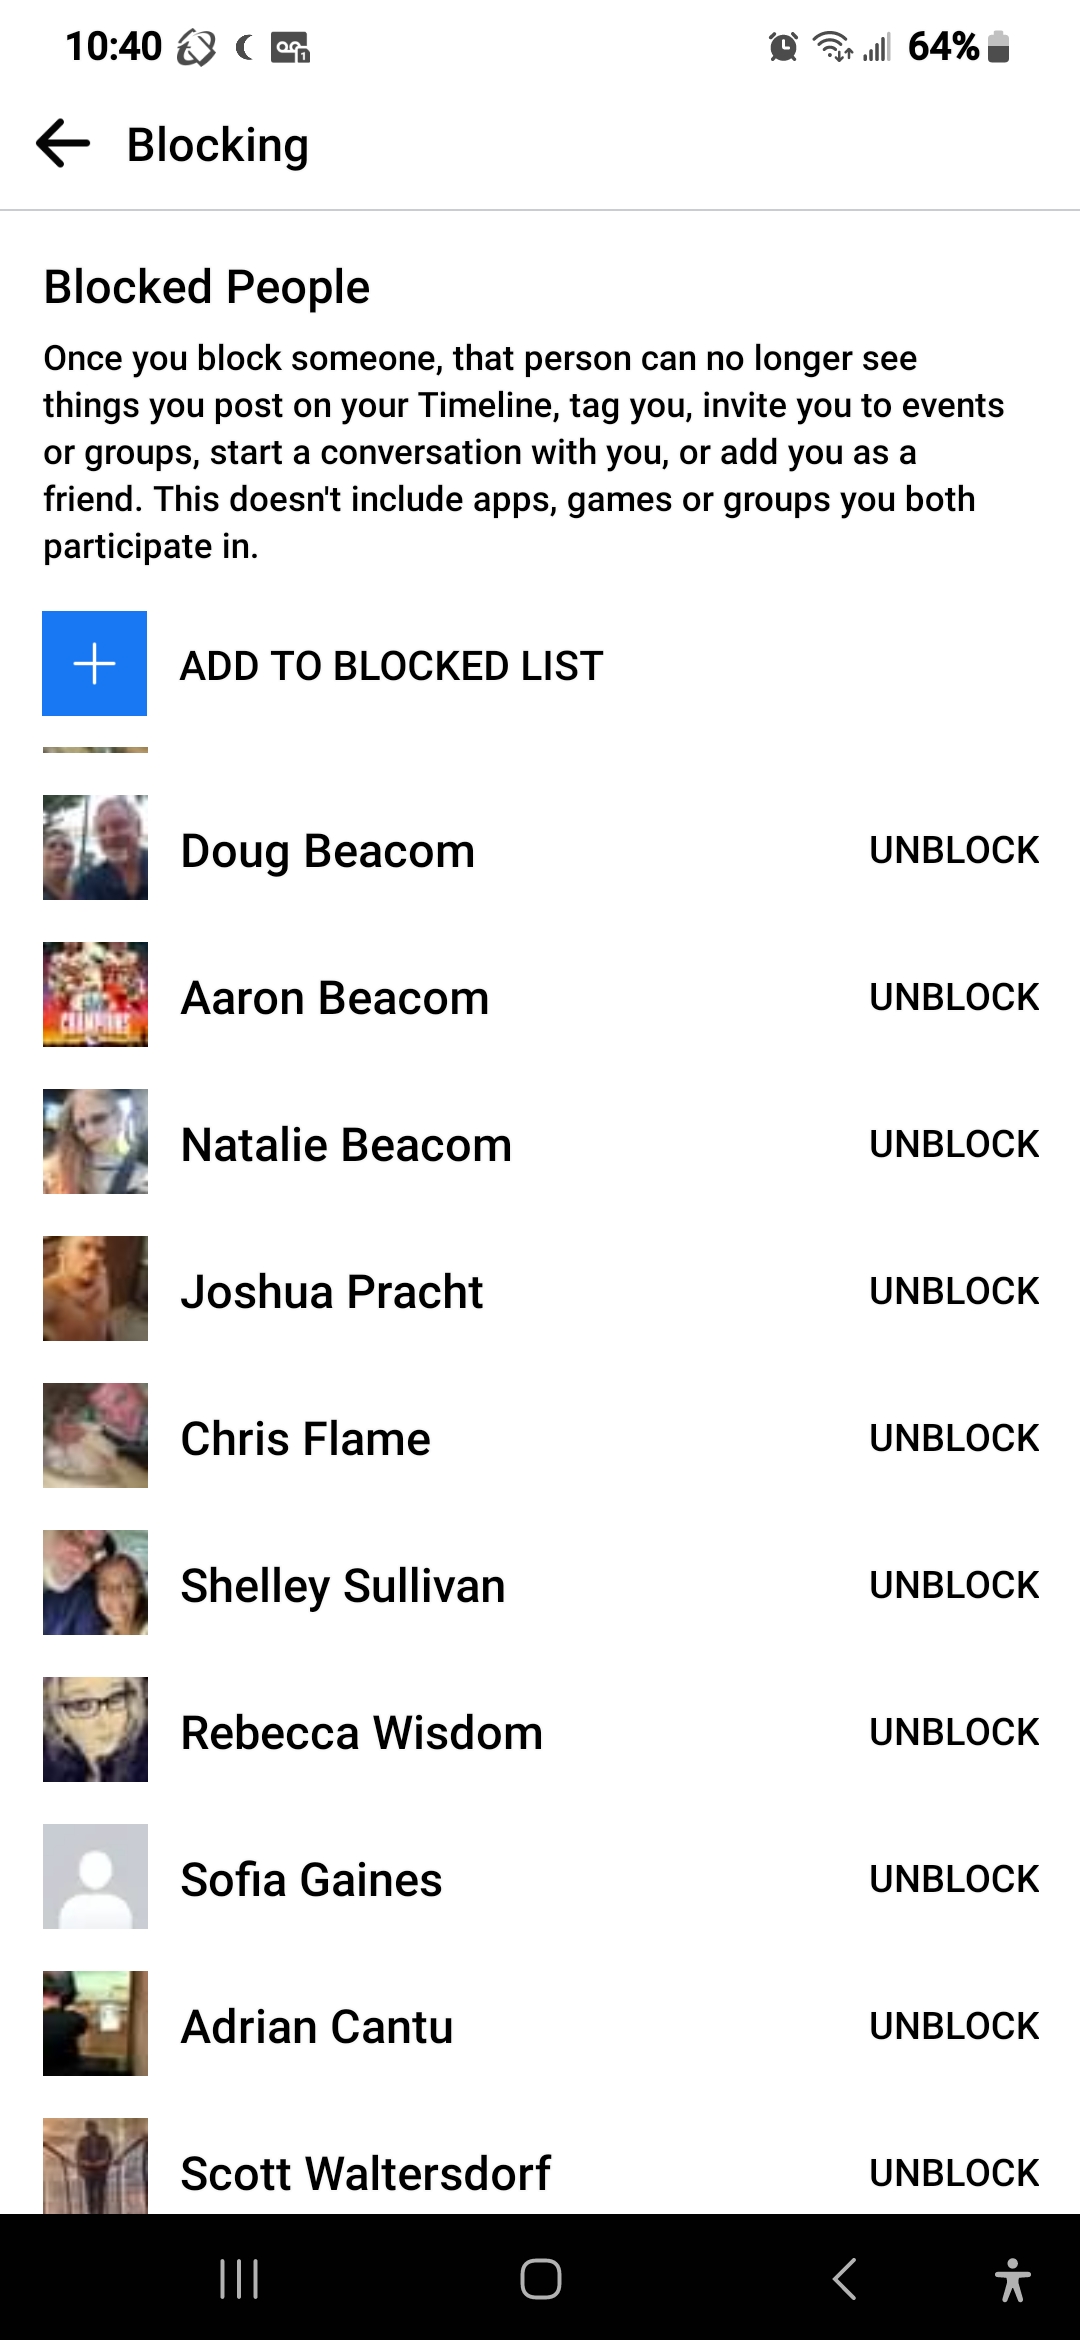 Blocking